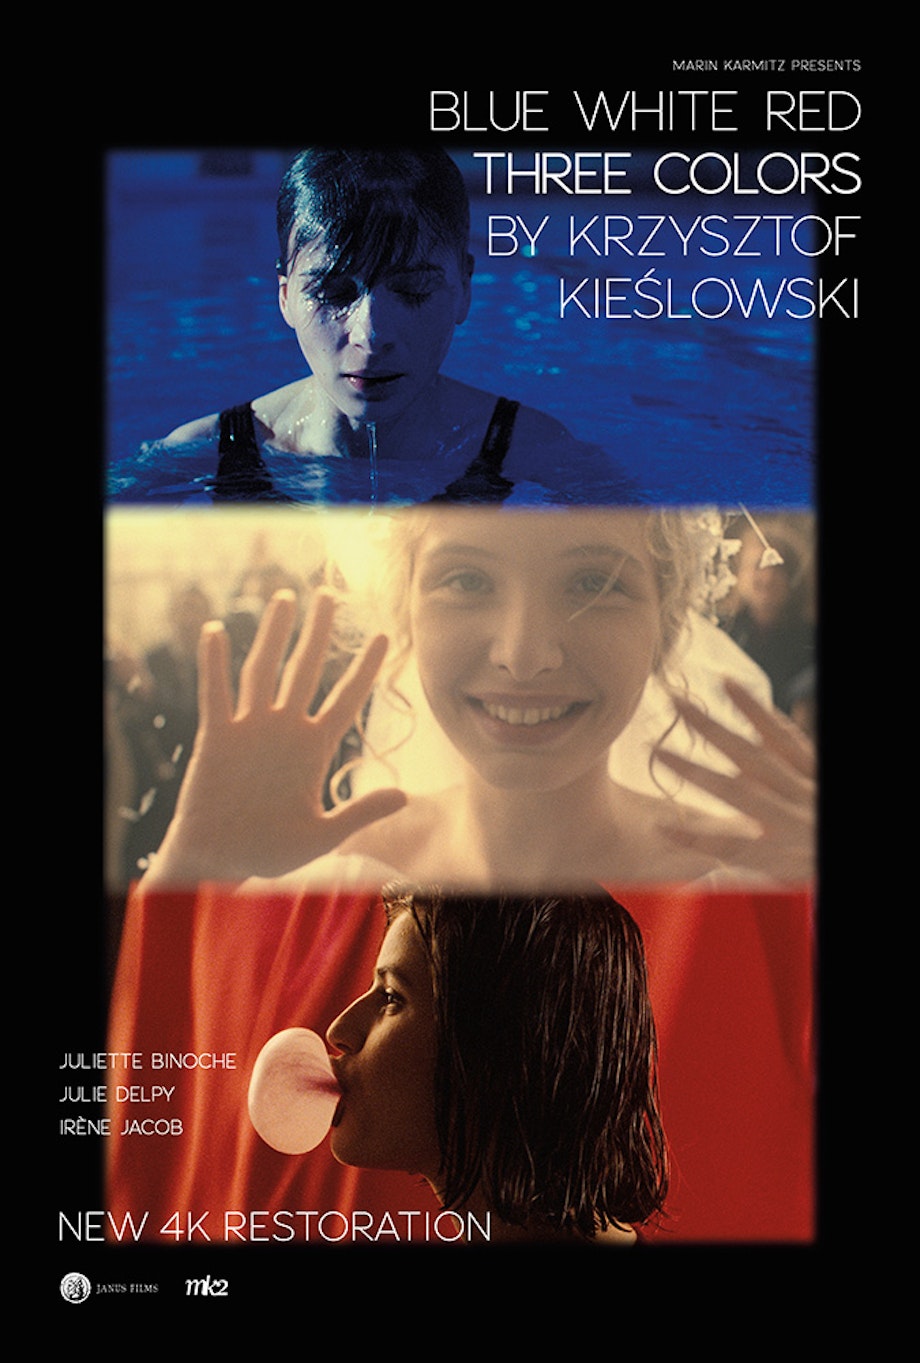 The Films of Krzysztof Kieślowski [gallery], Gallery